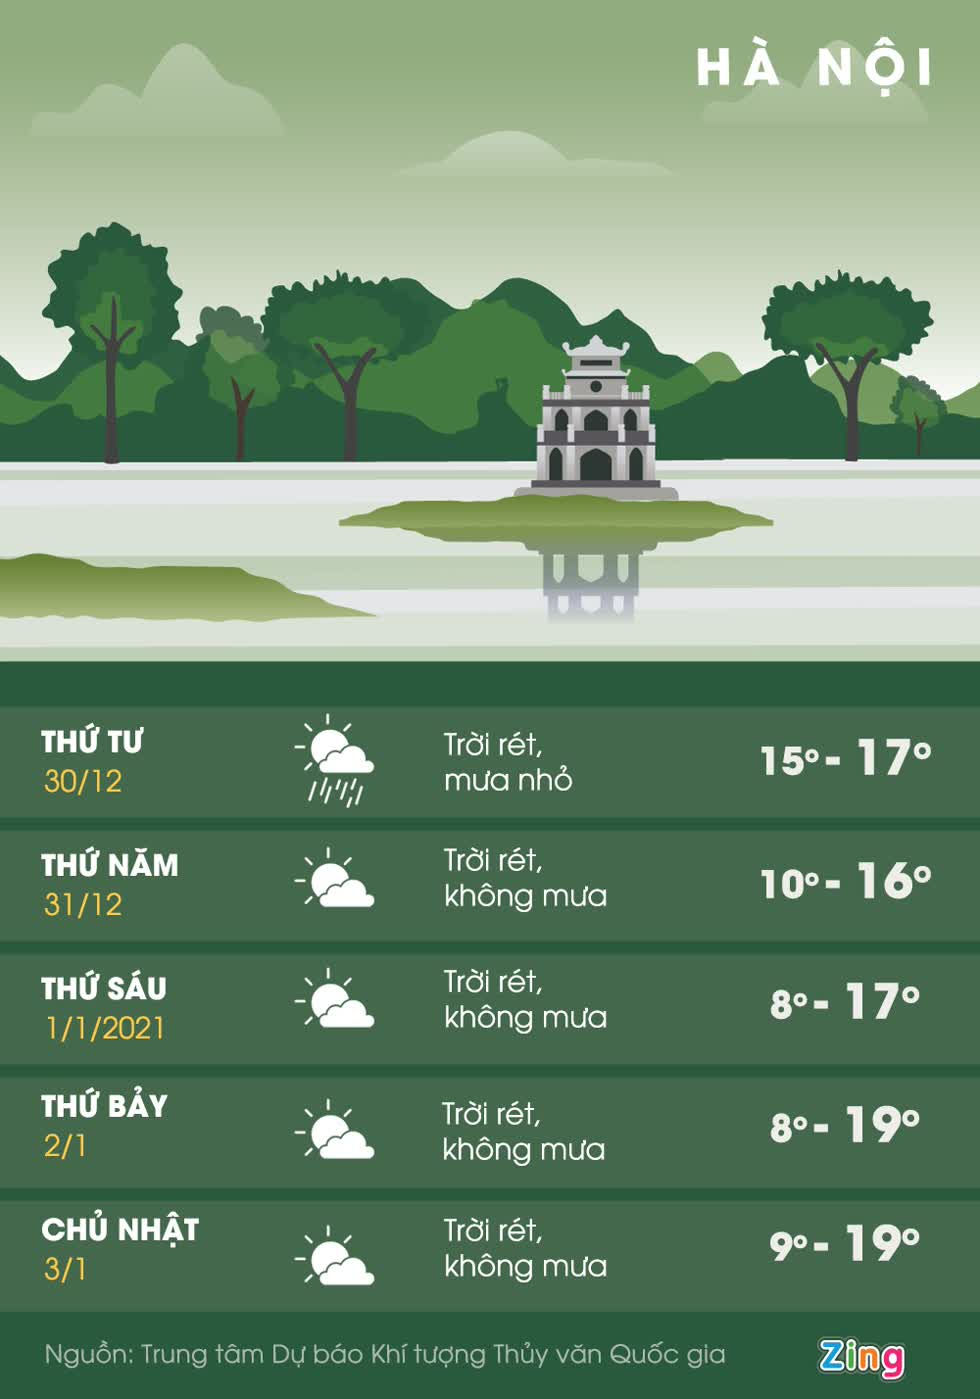 Dự báo thời tiết Hà Nội trong 5 ngày tới. Đồ họa: Mỹ Hà.